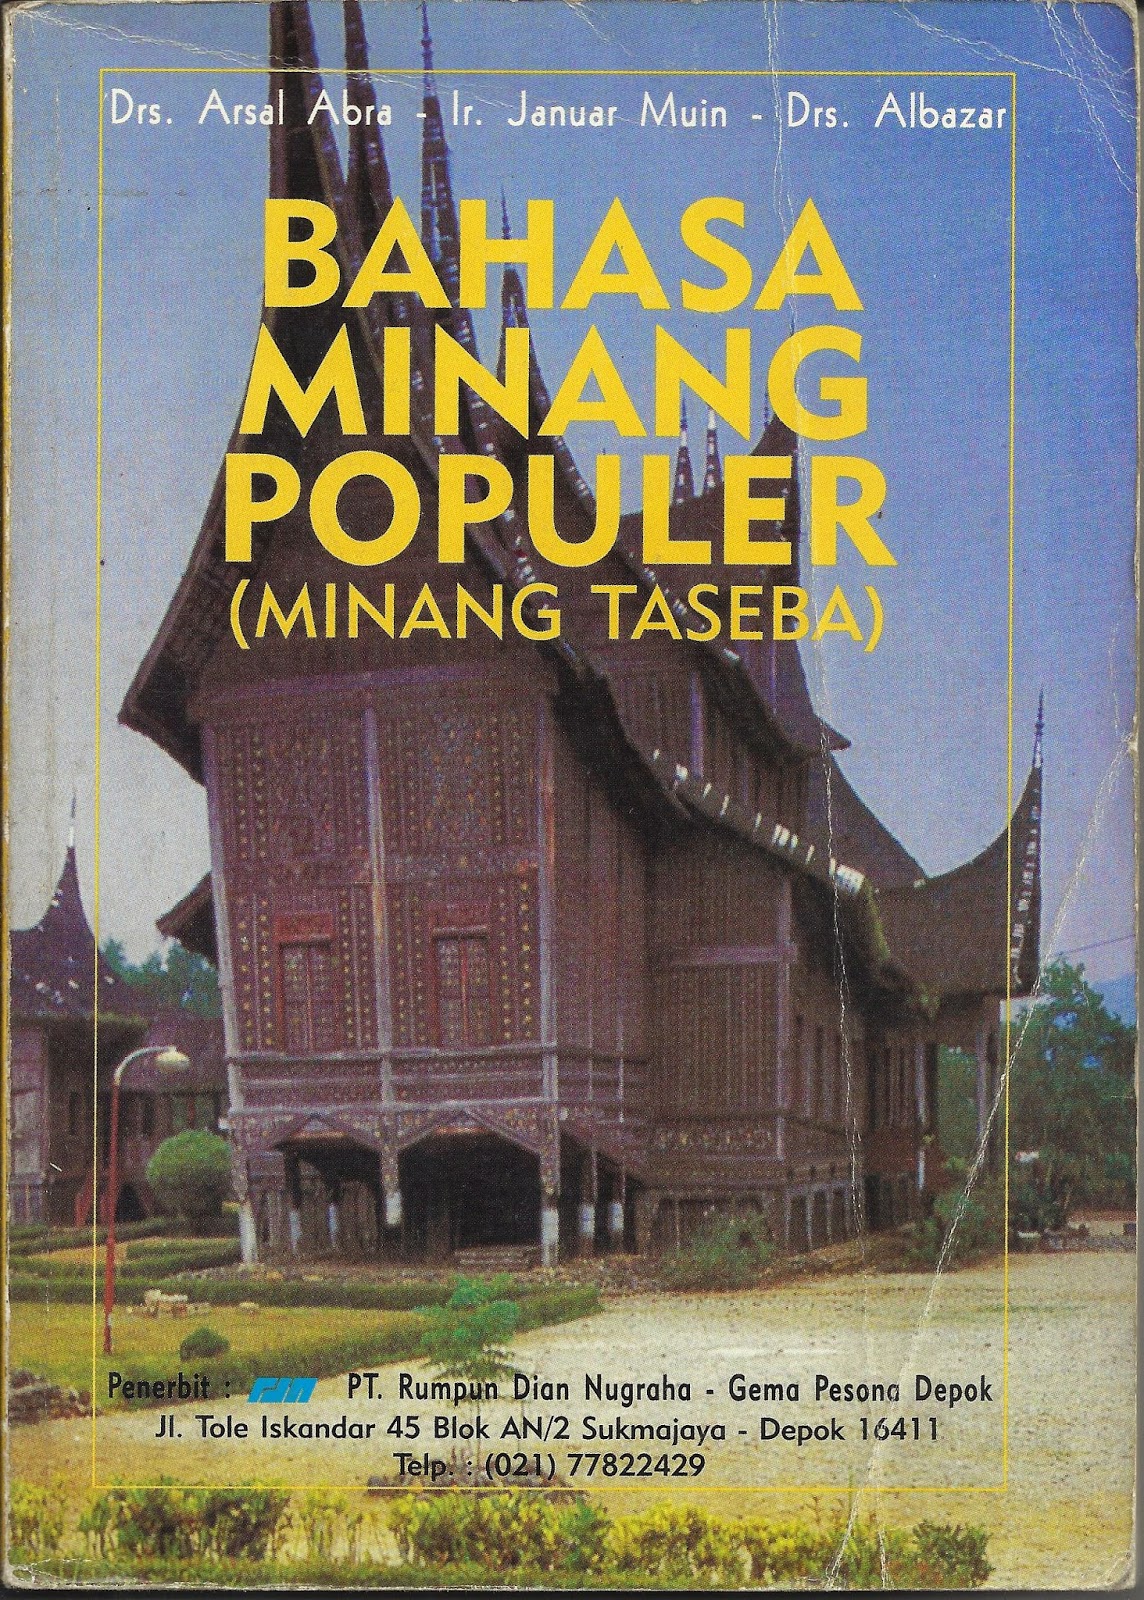 Palanta Minang Bahasa Minang Populer Minang Taseba